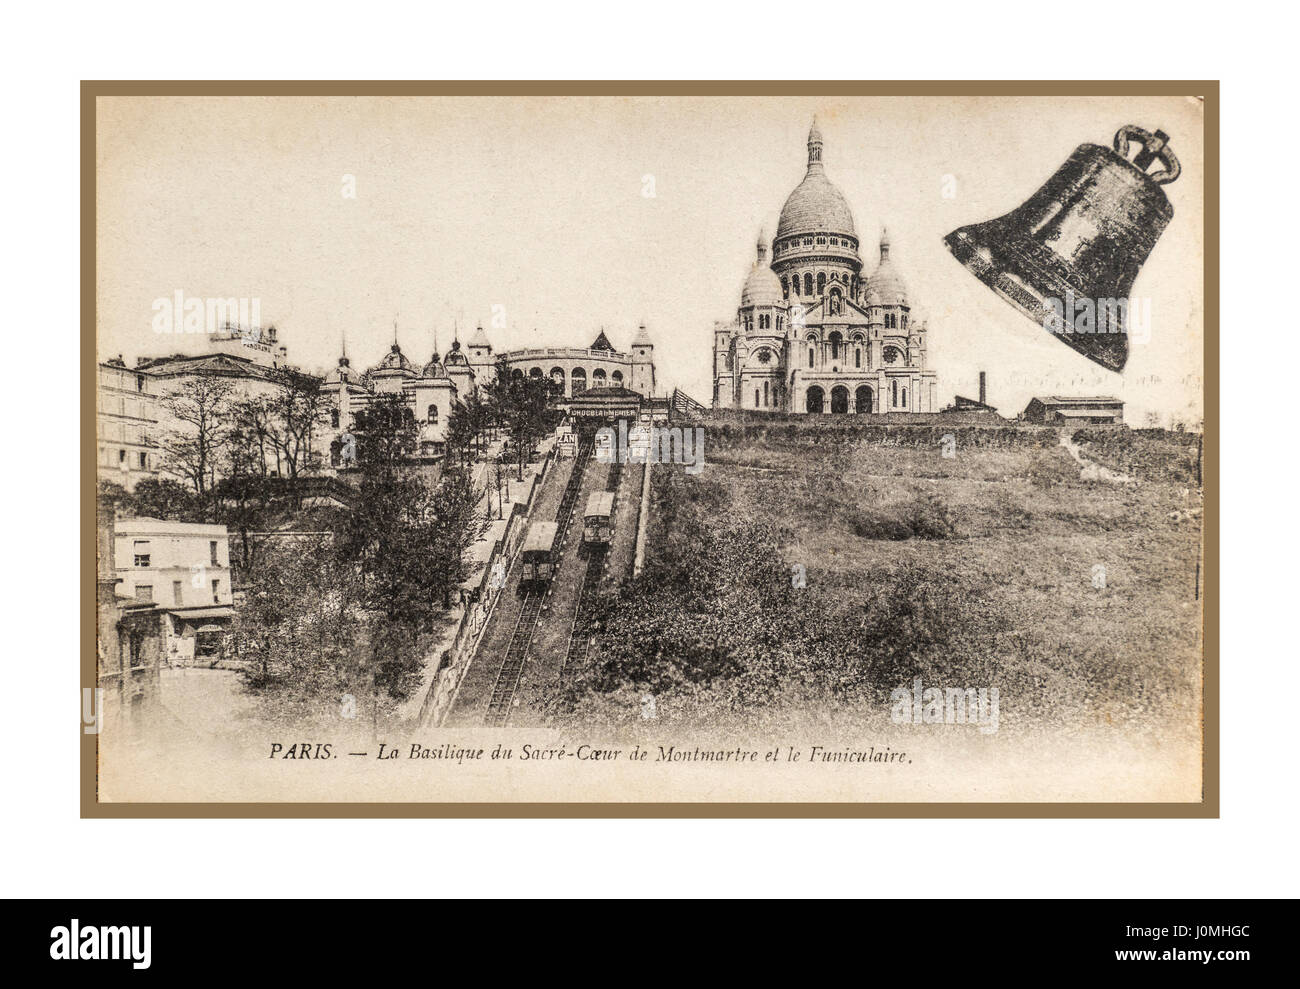 Paris Montmartre historische B&W Sepia-Aussicht auf die Basilika Sacré Coeur und die Standseilbahnen auf der Schiene Montmartre Paris Frankreich aus dem Jahr 1900 Stockfoto